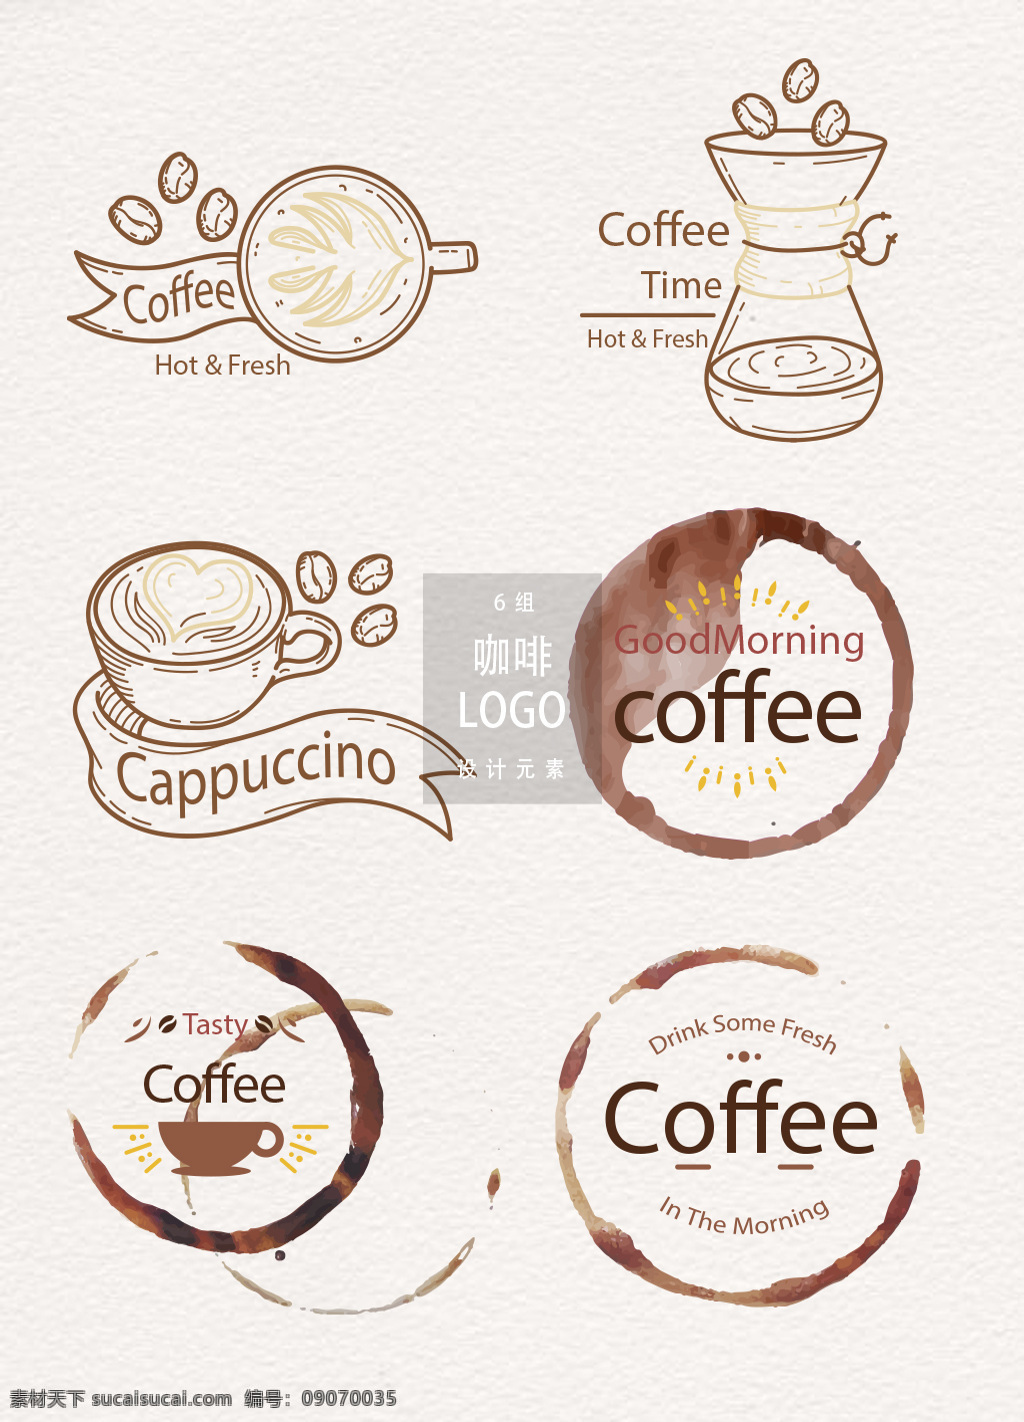 创意 咖啡厅 标志 logo 图标 矢量素材 丝带 咖啡豆 咖啡 手绘咖啡 咖啡logo 咖啡图标 图标设计 咖啡厅店招 咖啡印迹 咖啡店